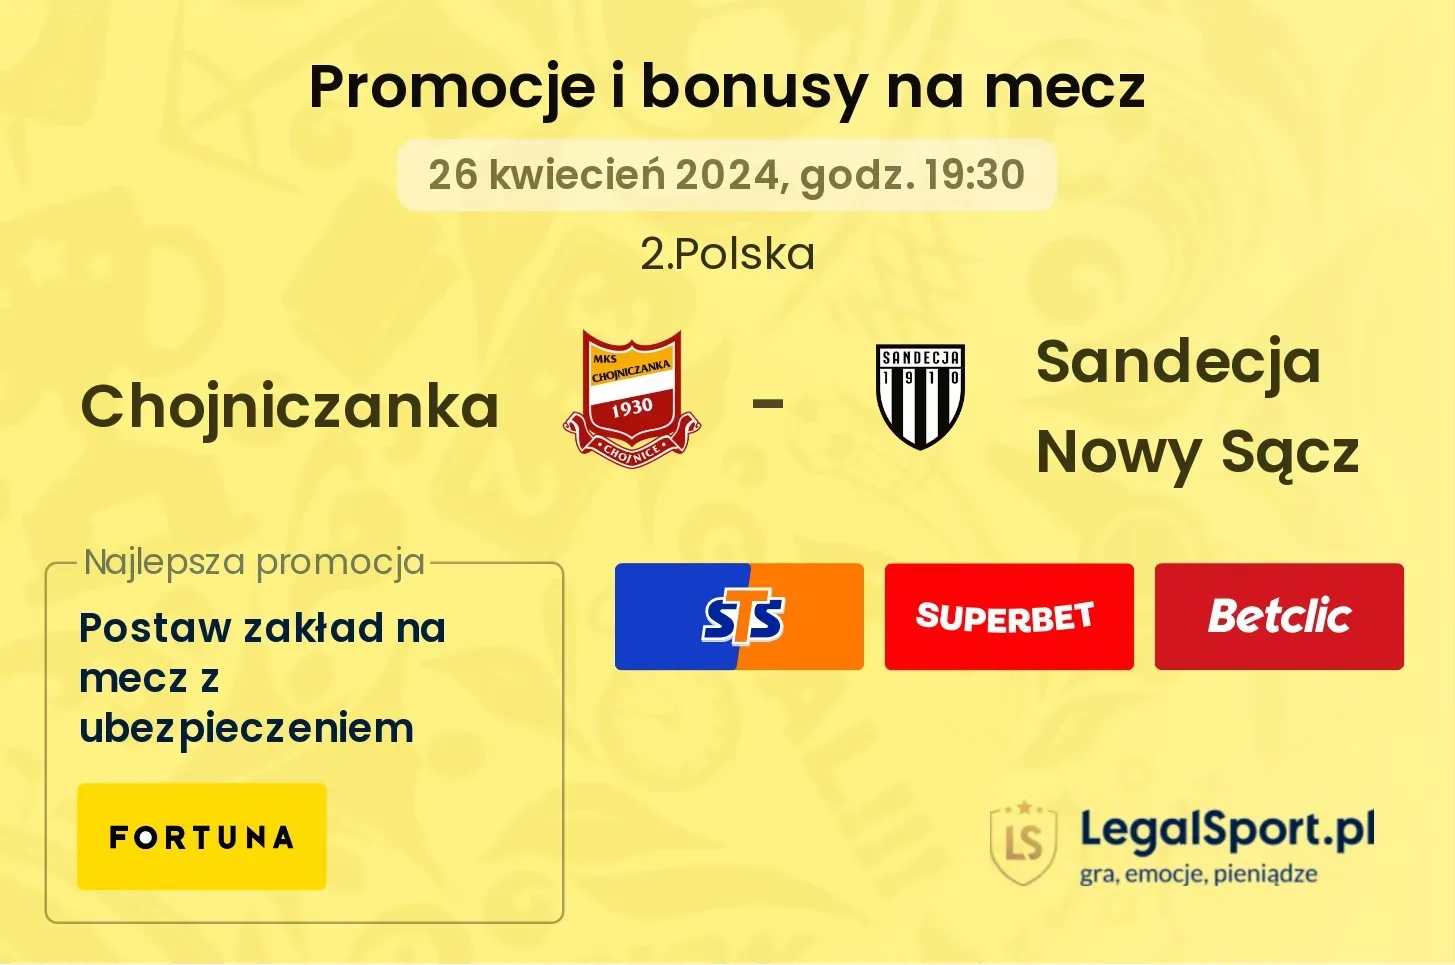 Chojniczanka - Sandecja Nowy Sącz promocje bonusy na mecz